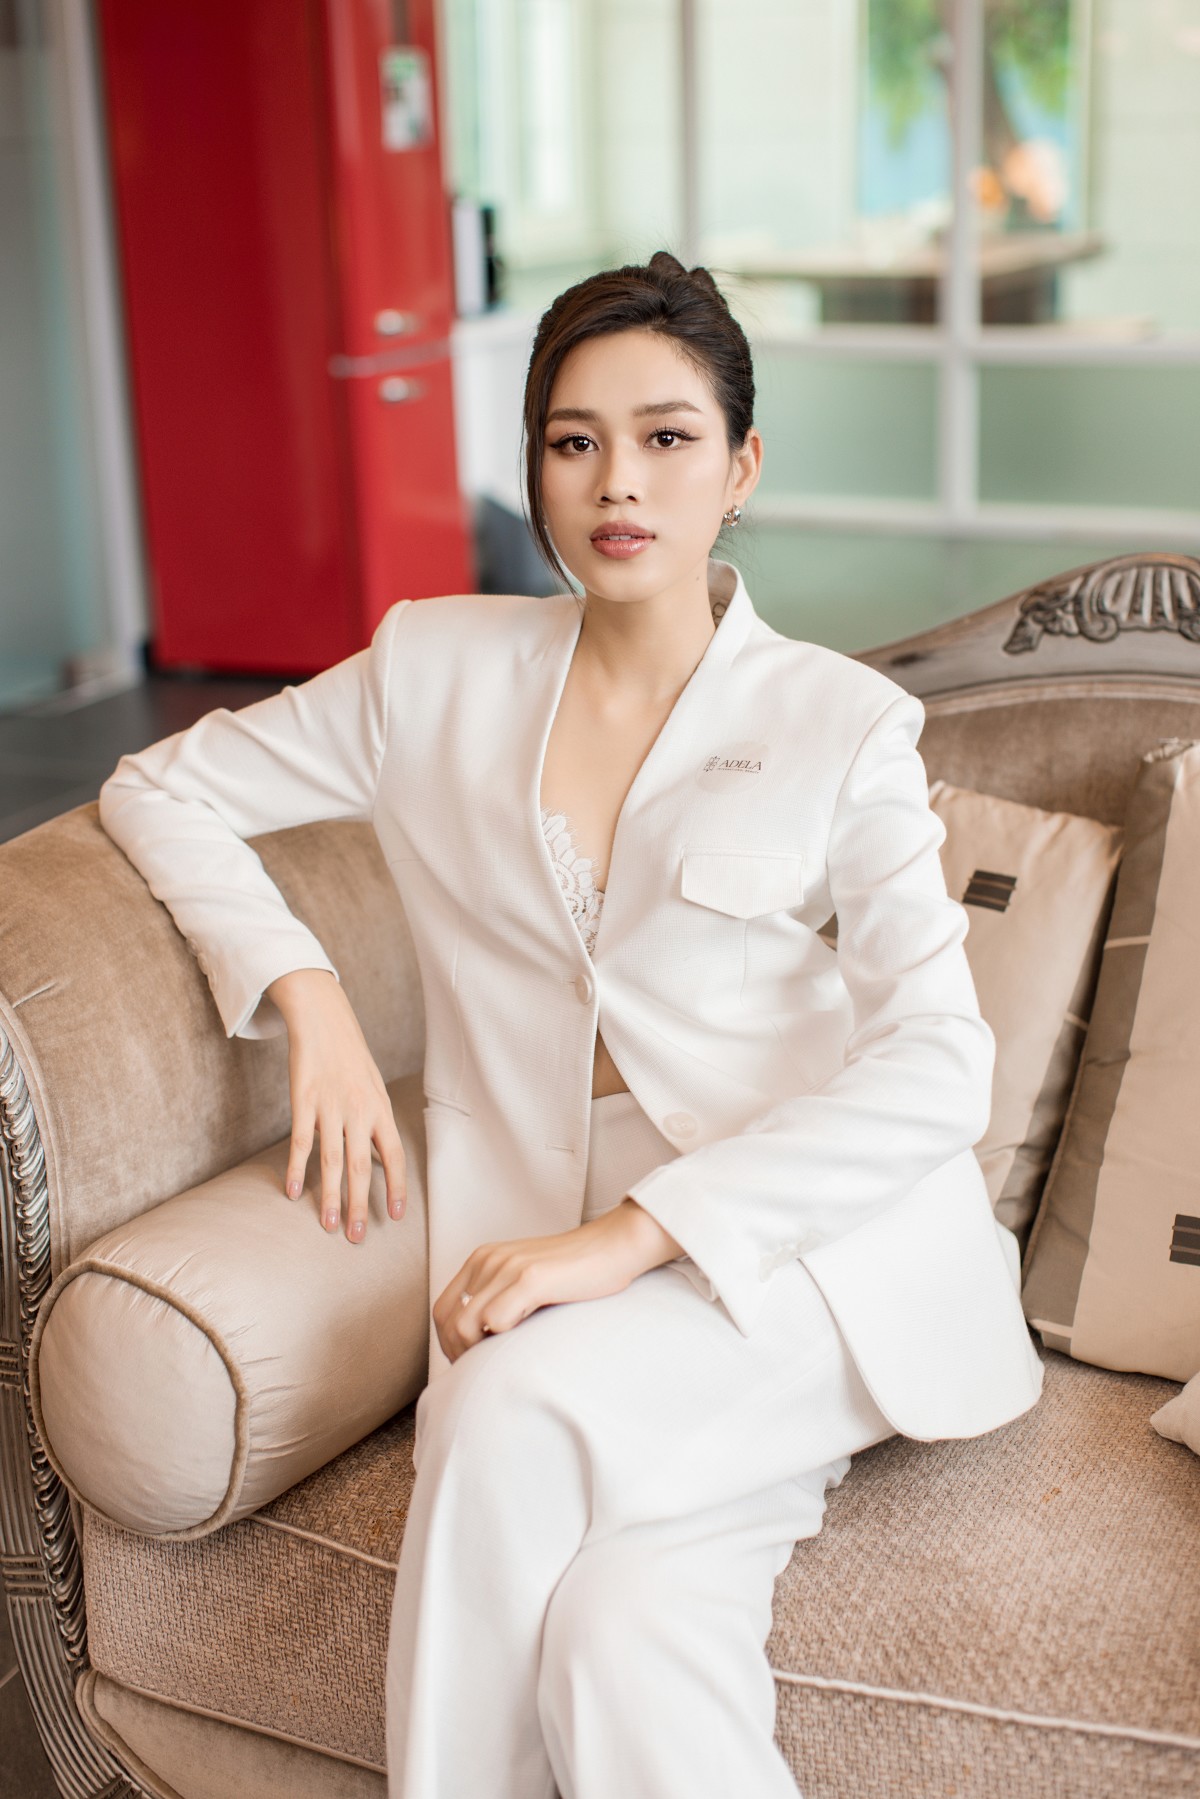 Hoa hậu Đỗ Thị Hà lên đồ đẹp chuẩn nữ CEO ở tuổi 22 - 6